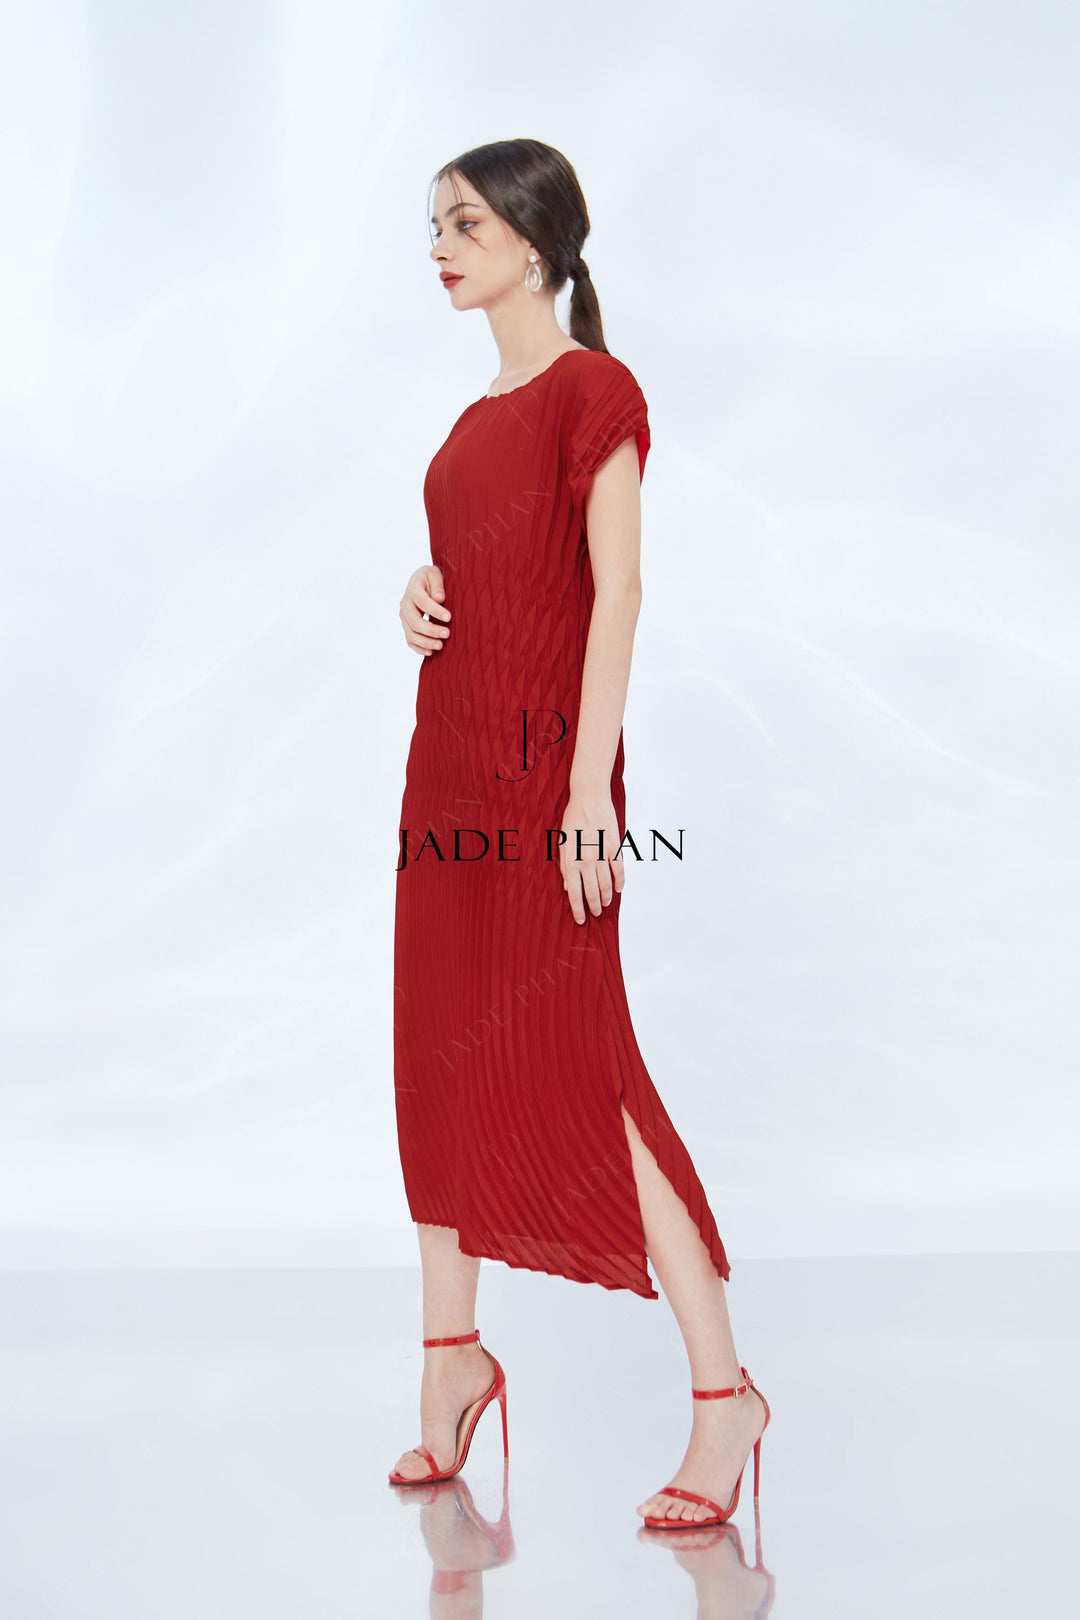 ALINE Dress - Đỏ